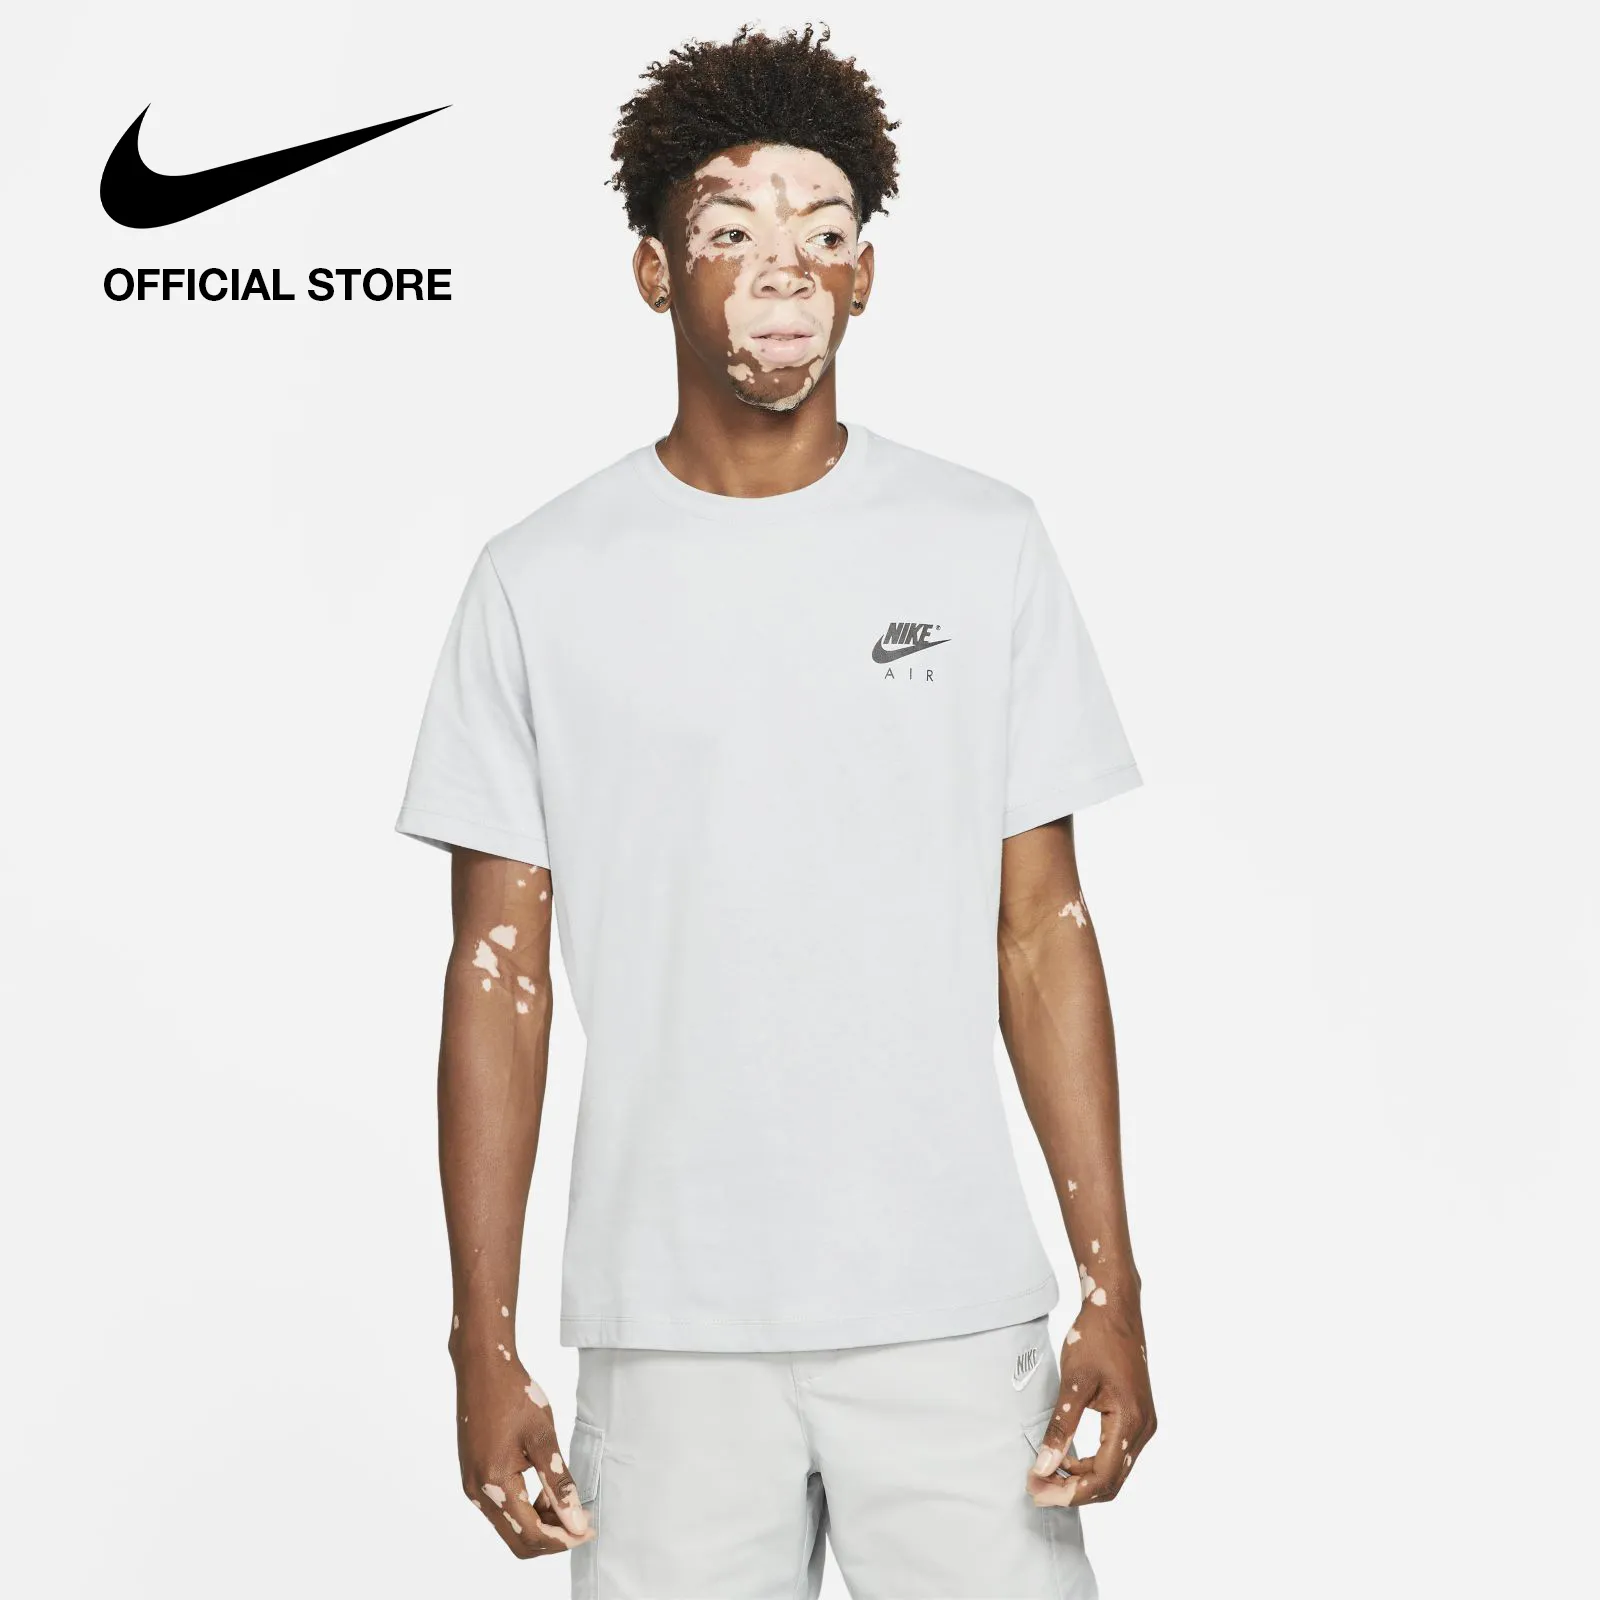 Nike Men's Sportswear T-Shirt - Grey ไนกี้ เสื้อยืดผู้ชาย - สีเทา